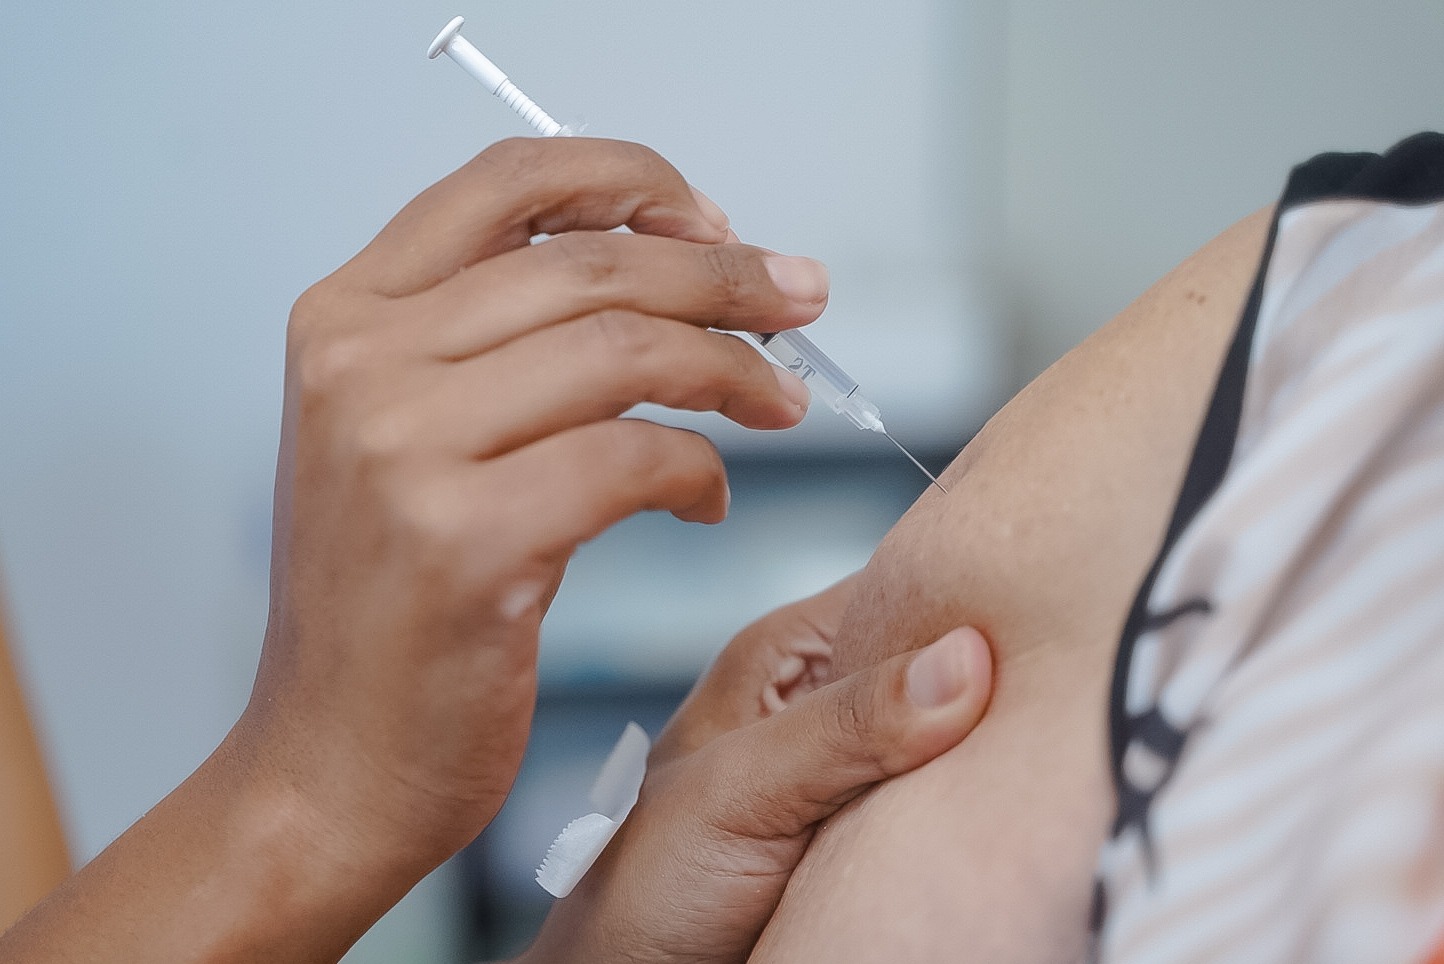 Certificado Internacional de Vacinação e Profilaxia é exigência para entrada em 120 países